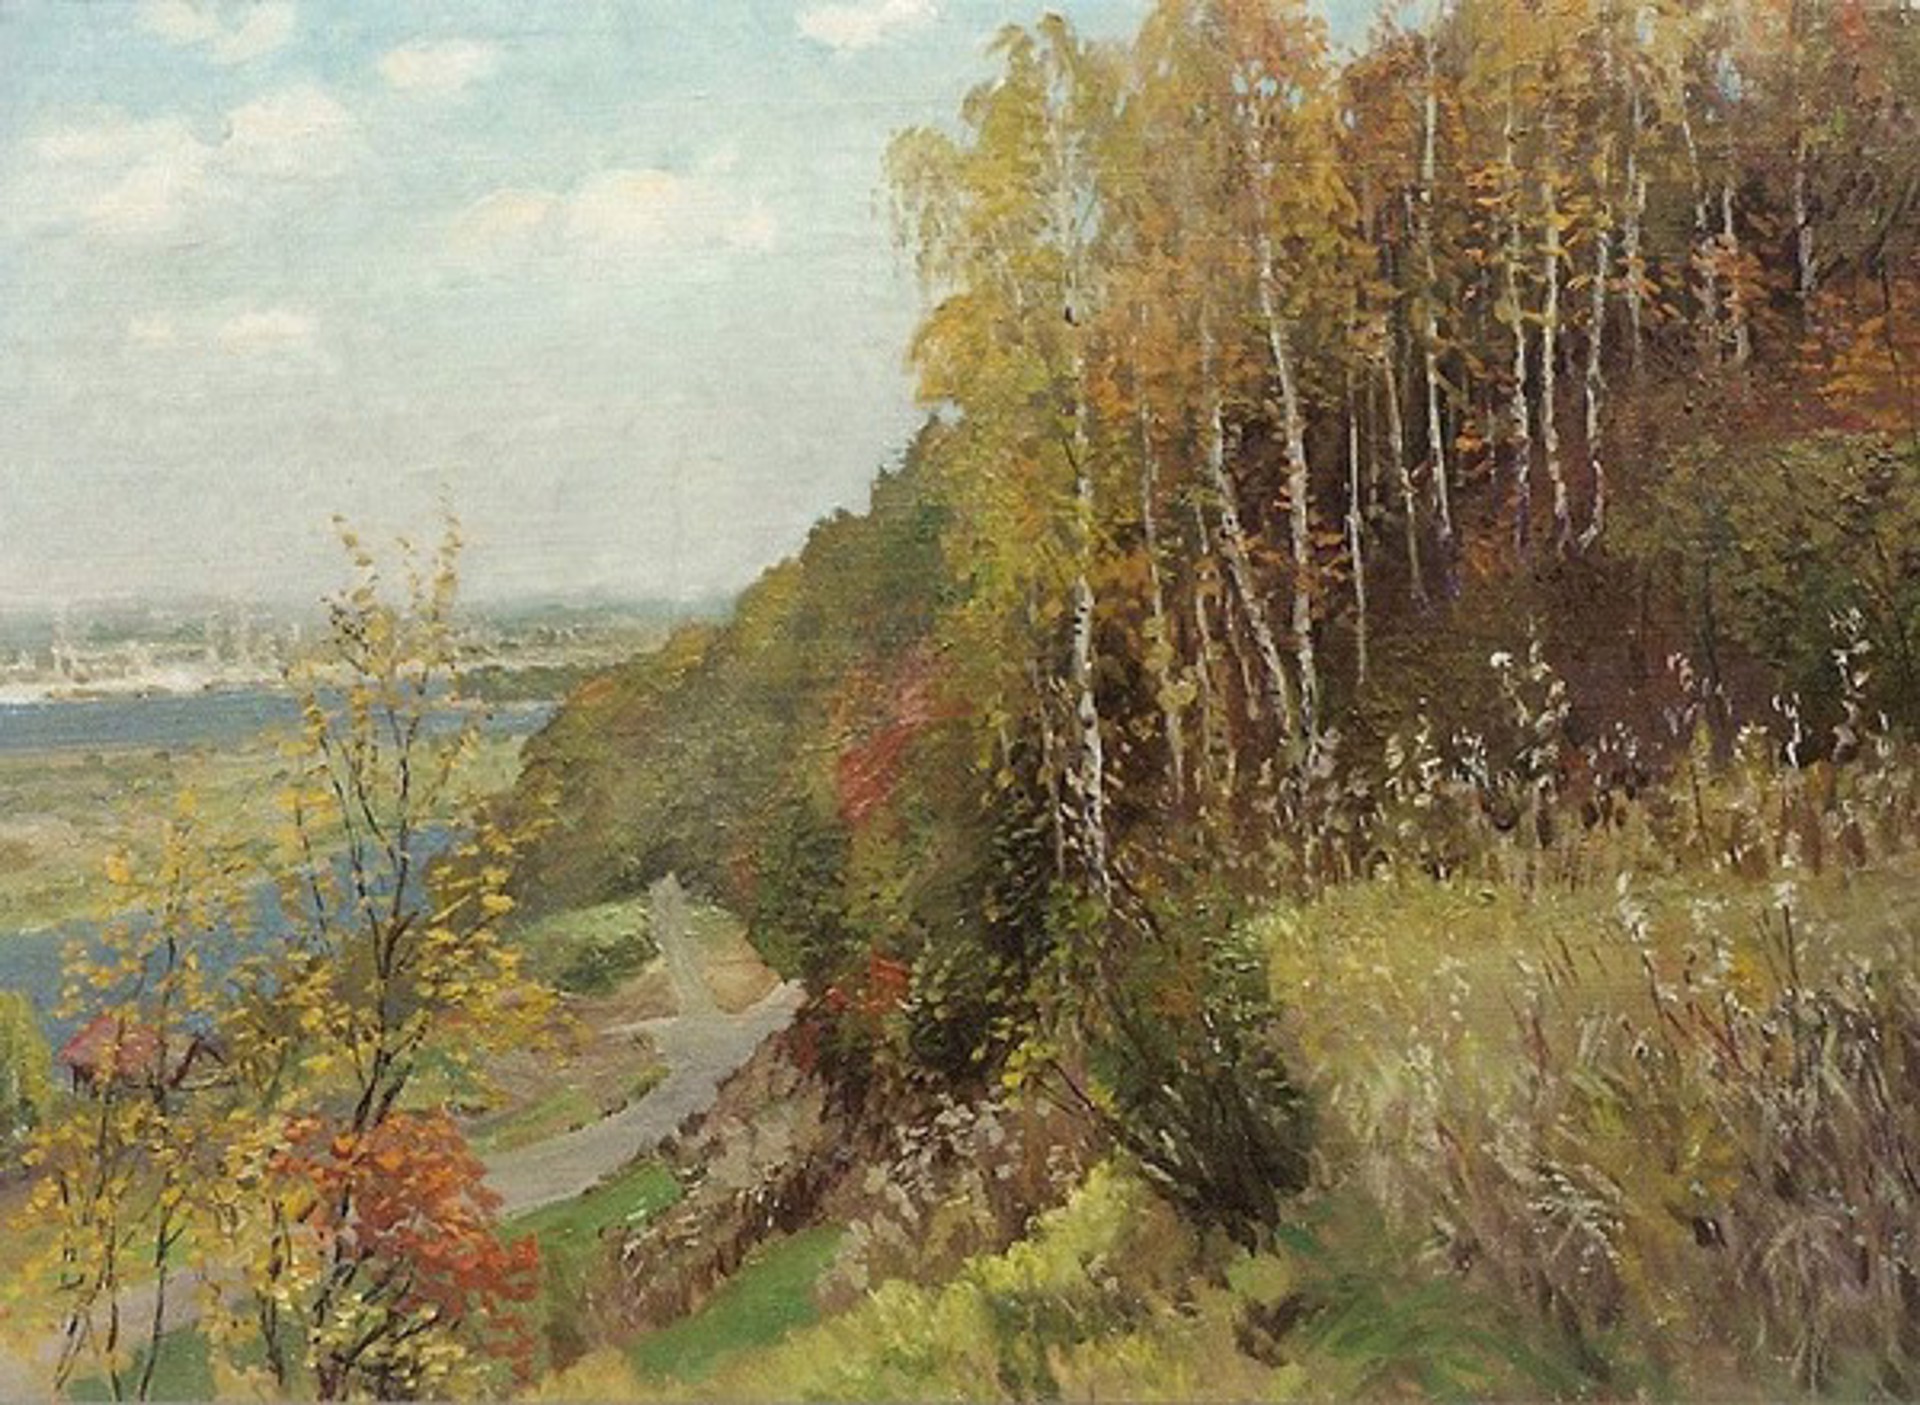 Beginning of Autumn by Aleksandr Kaminin